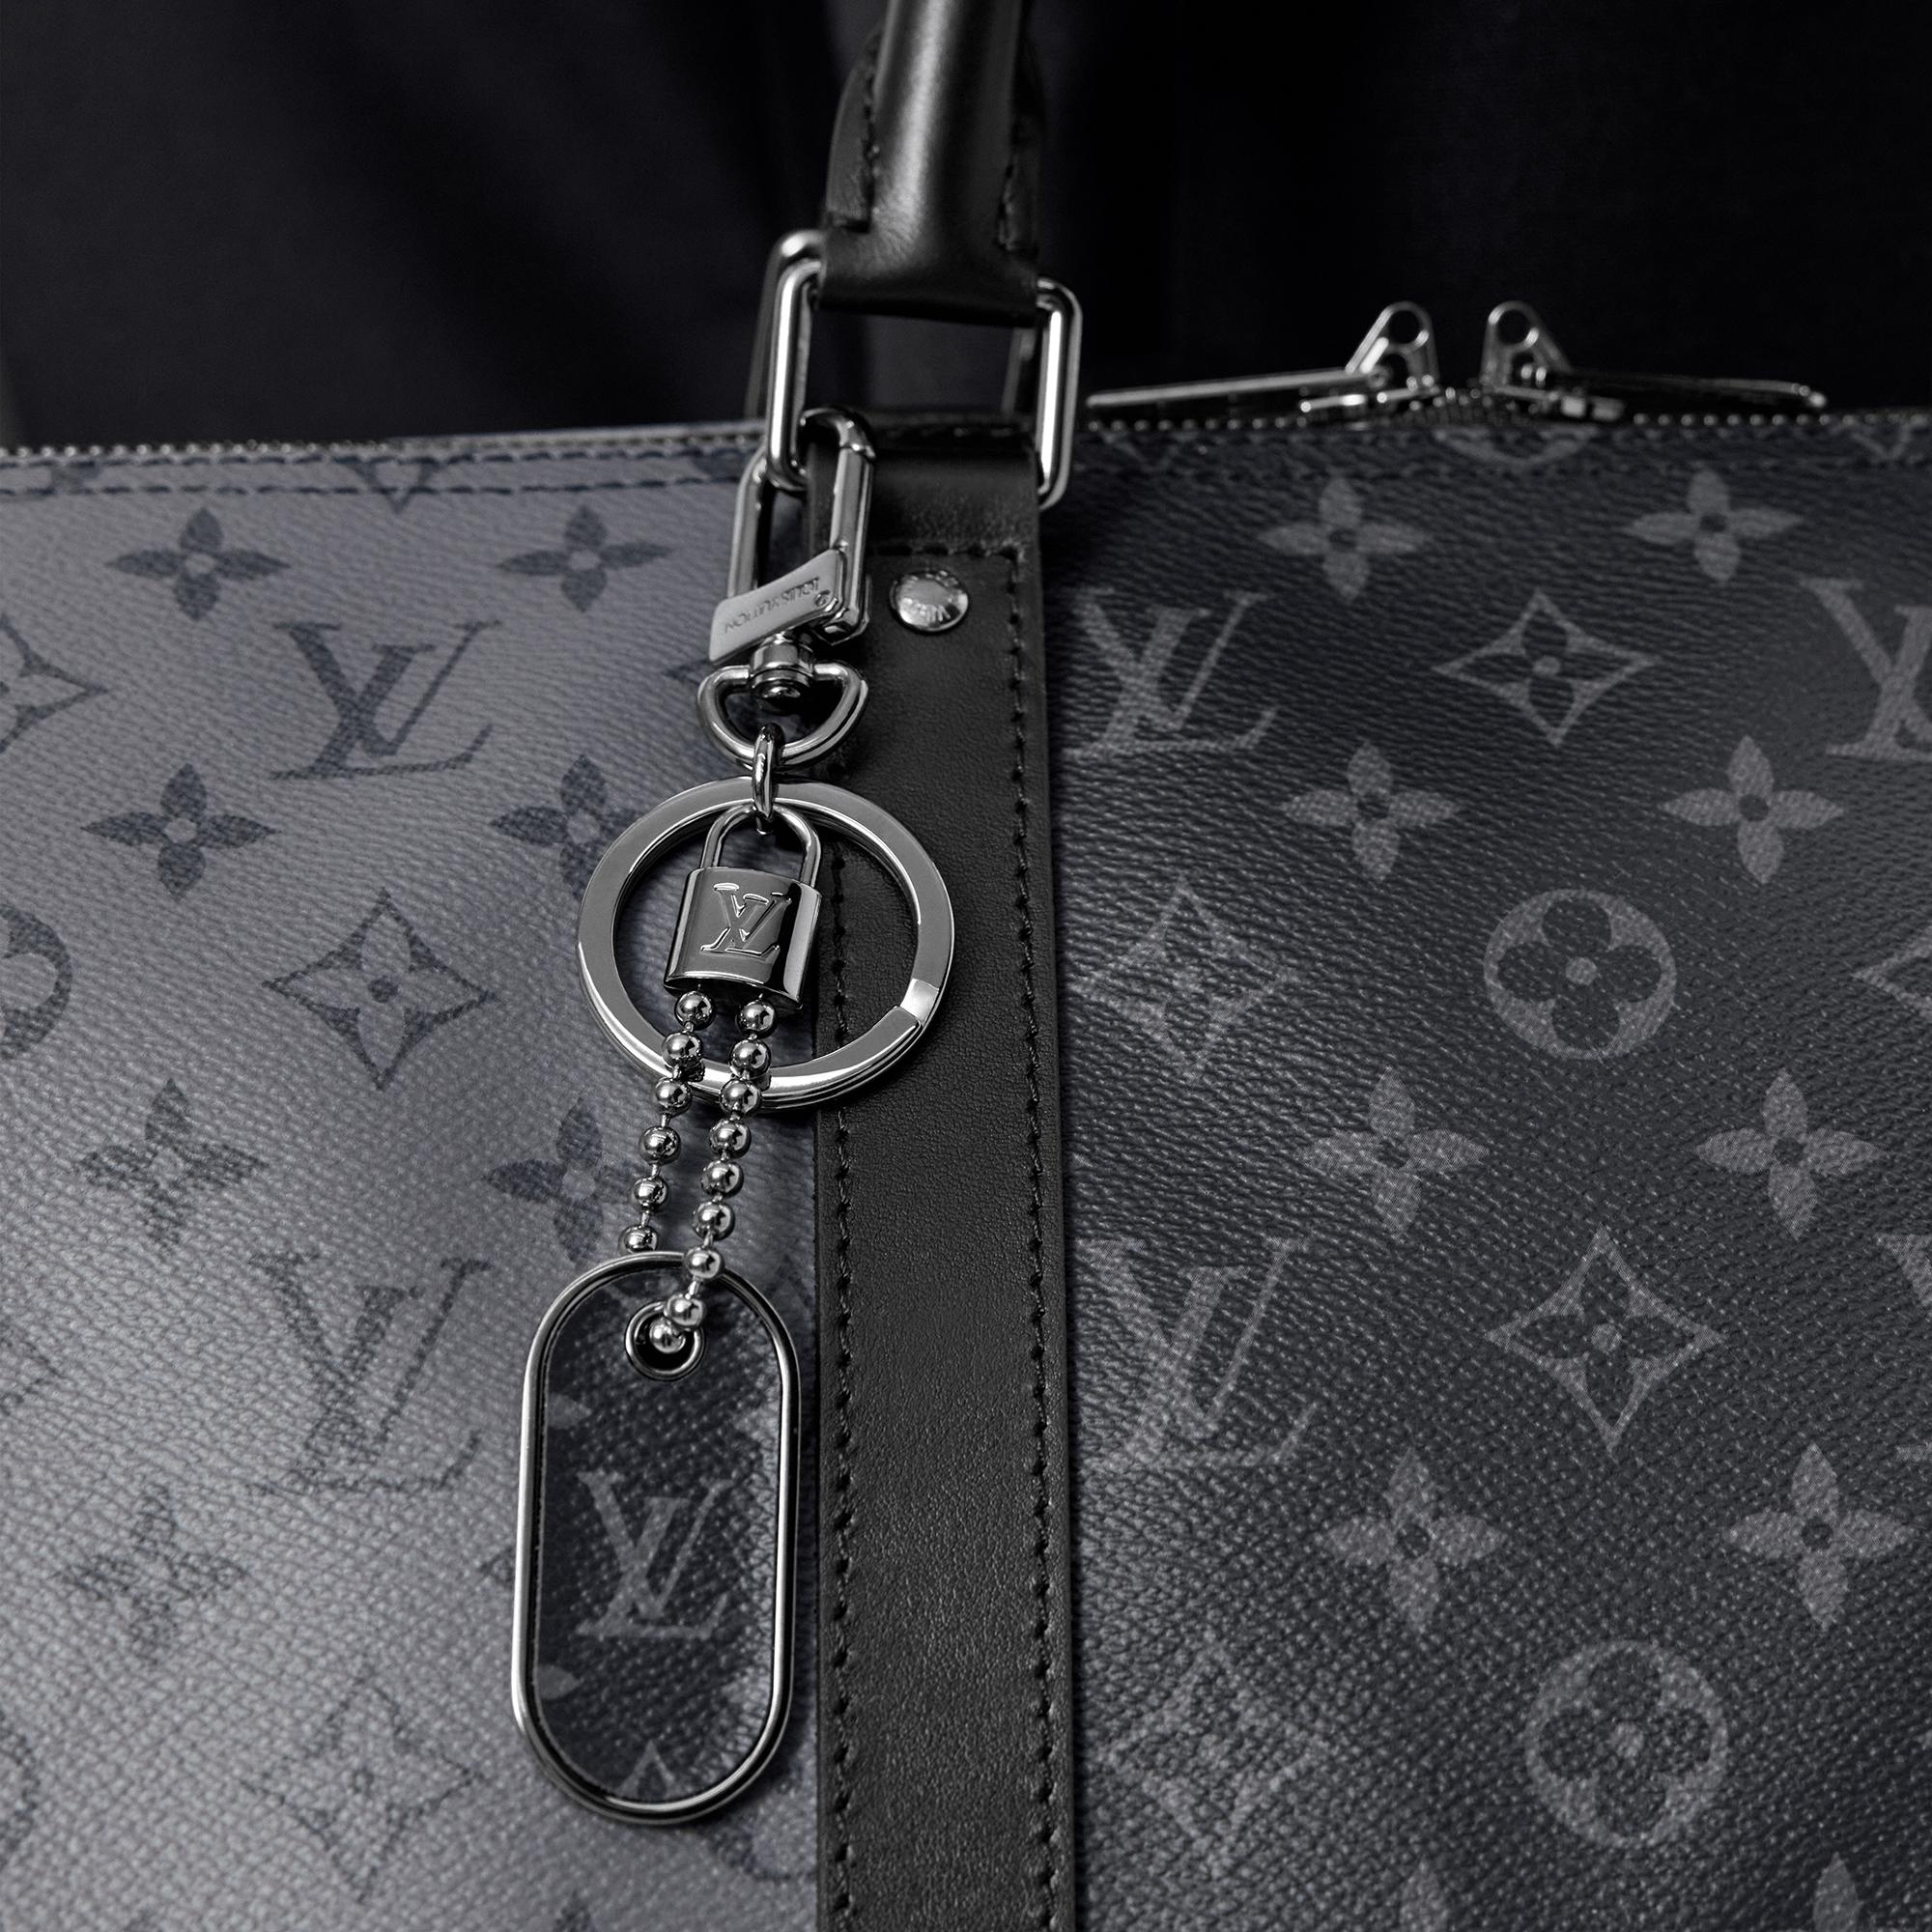 Shop Louis Vuitton MONOGRAM Monogram slim dragonne bag charm and key holder  (M77165, M77157, M77156) by Ravie